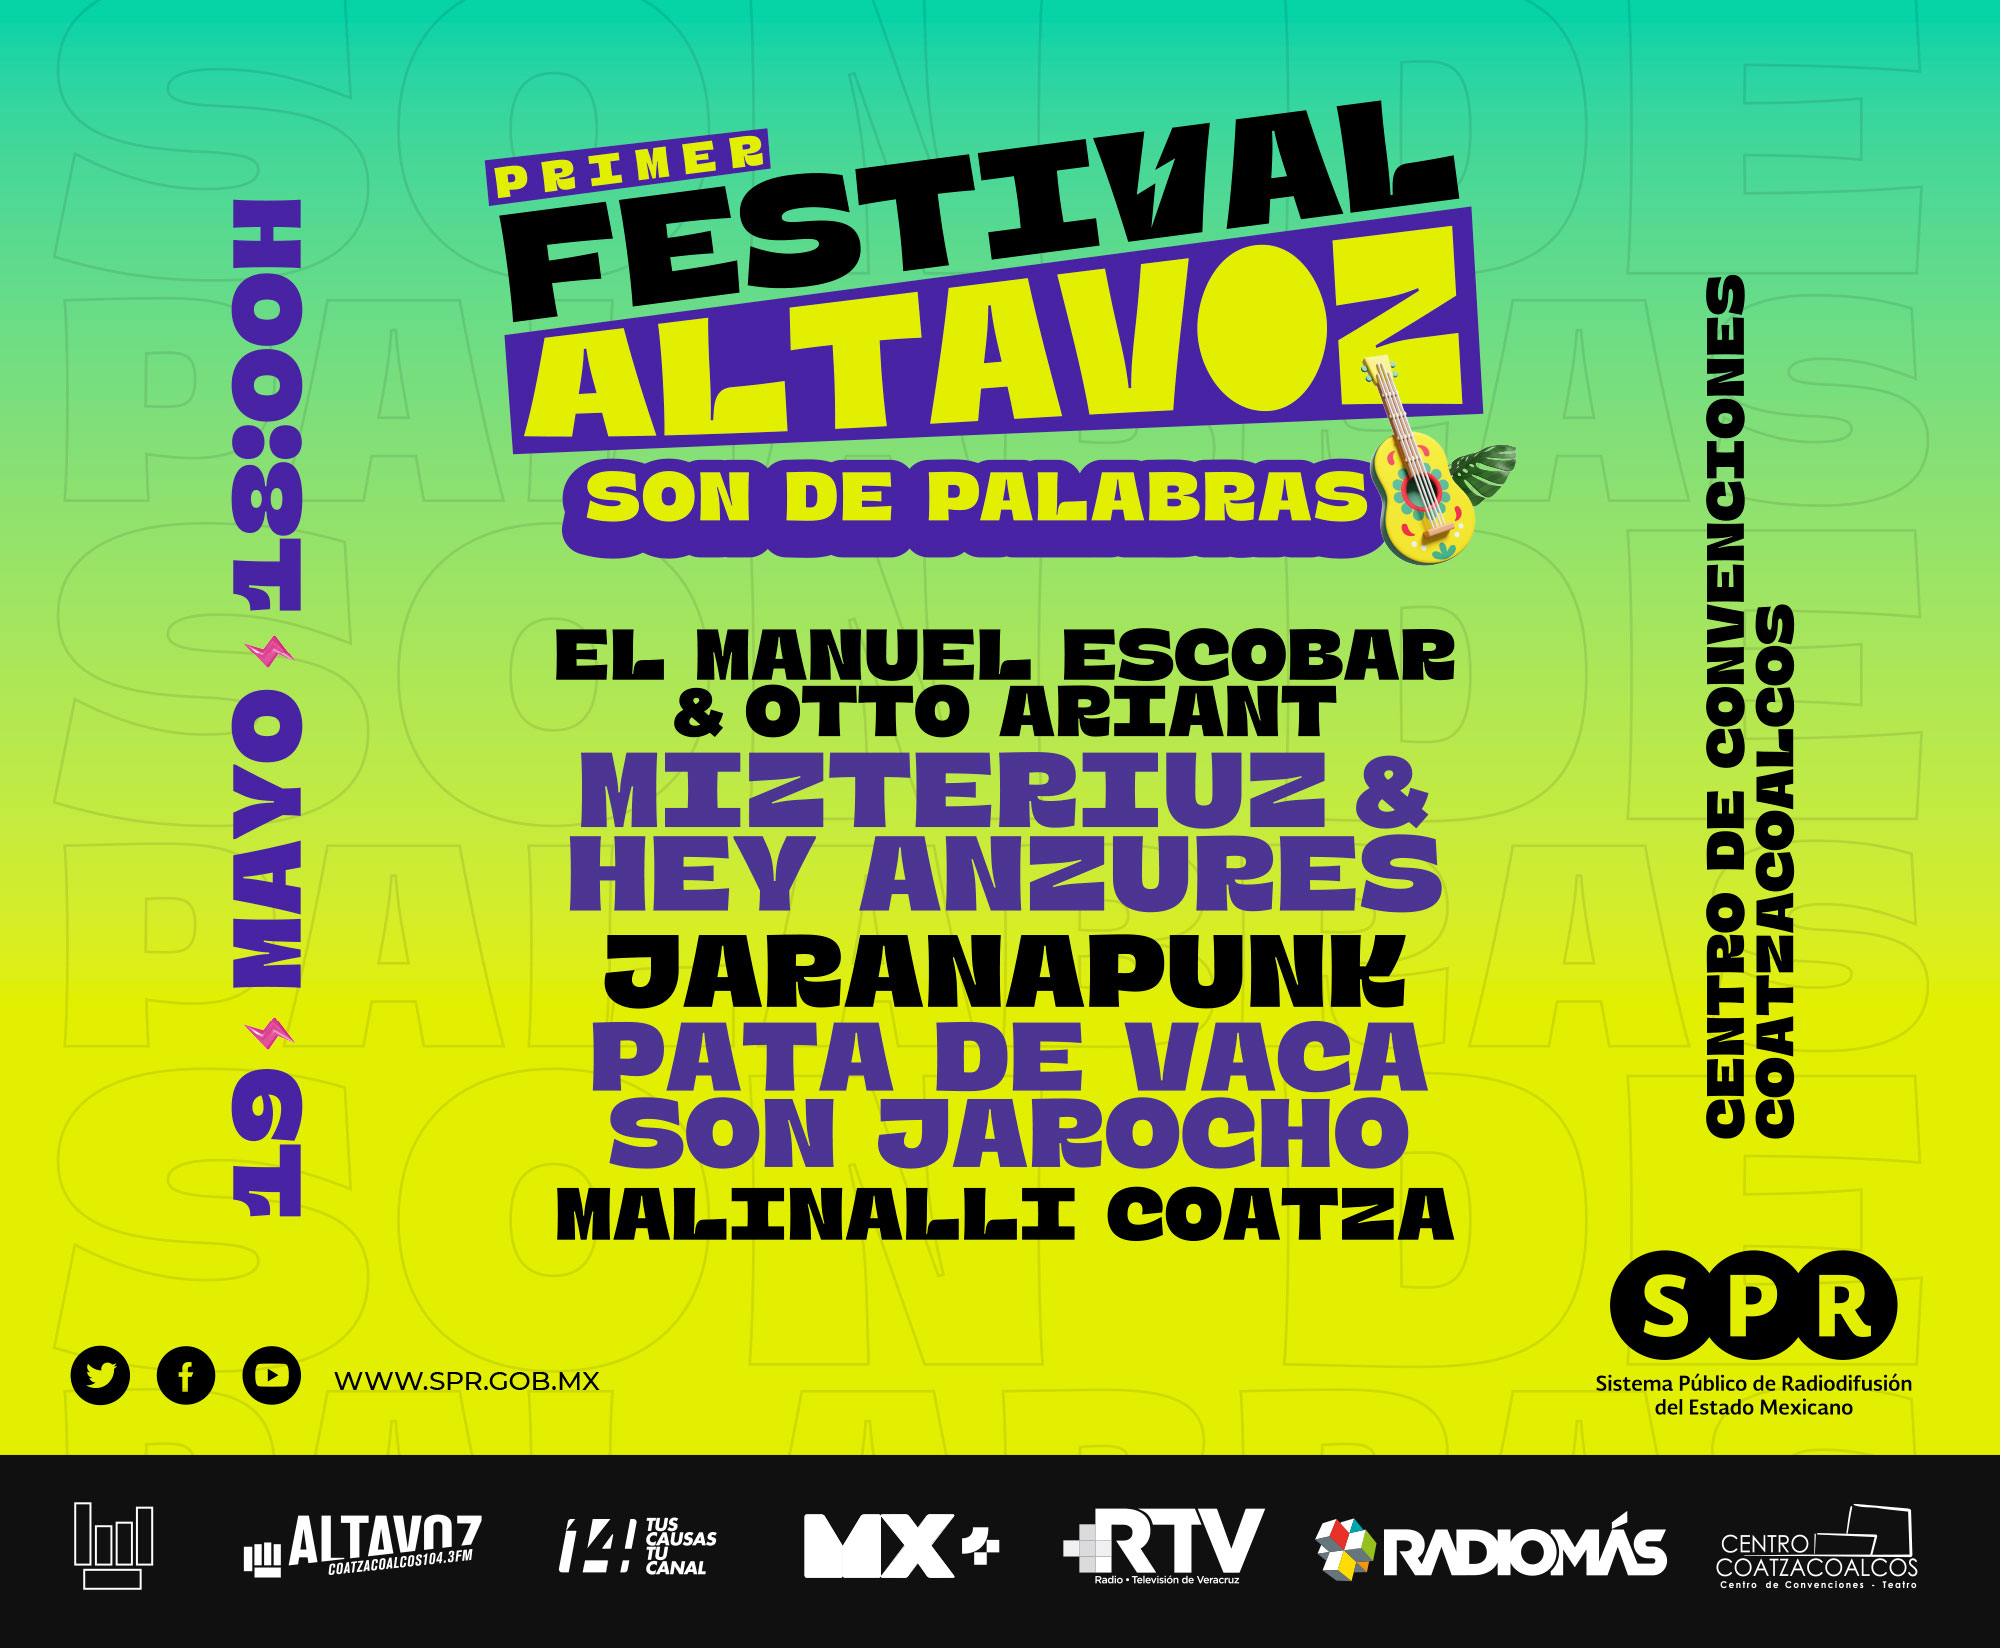 Altavoz Radio celebrará su “Primer Festival Altavoz: Son de Palabras” en Coatzacoalcos, Veracruz, el viernes 19 de mayo